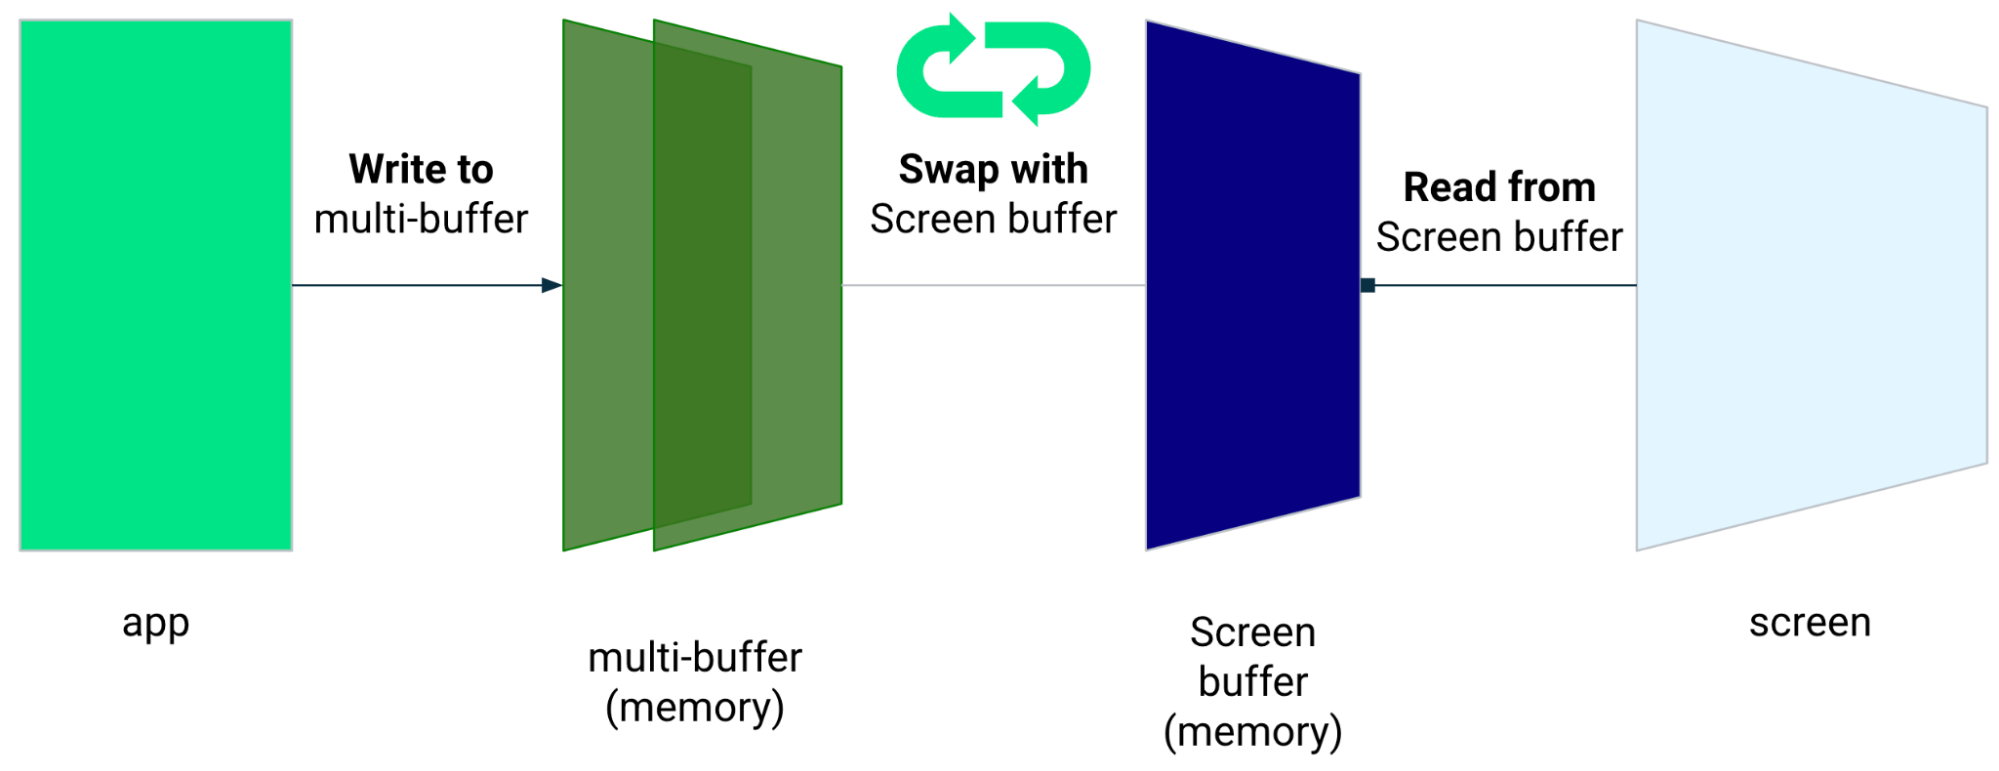 Aplikasi menulis ke multi-buffer yang ditukar dengan buffer layar. Aplikasi membaca dari buffer layar.